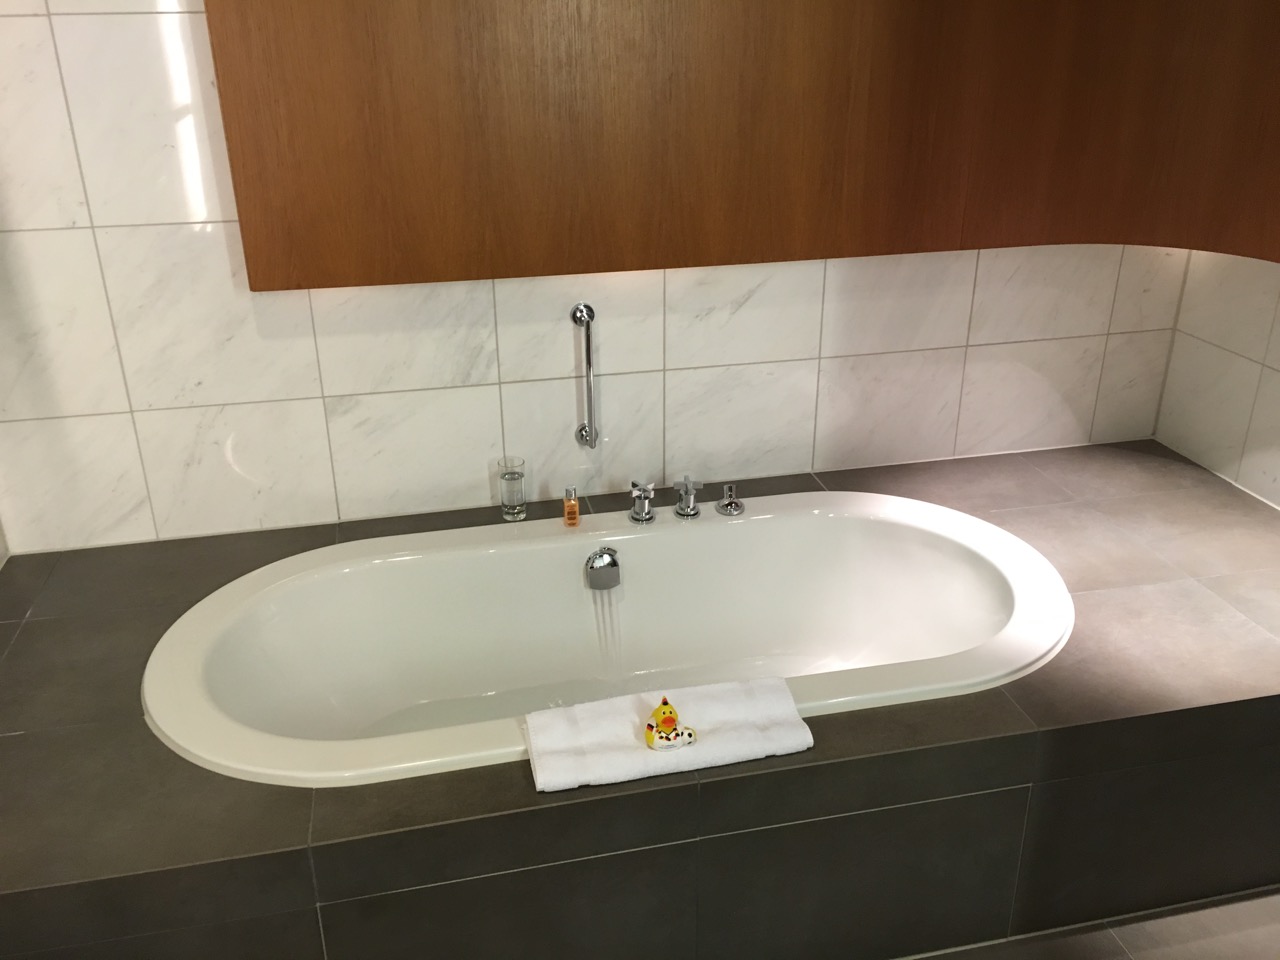 LH First Class Terminal Bath/Shower Room Bathtub